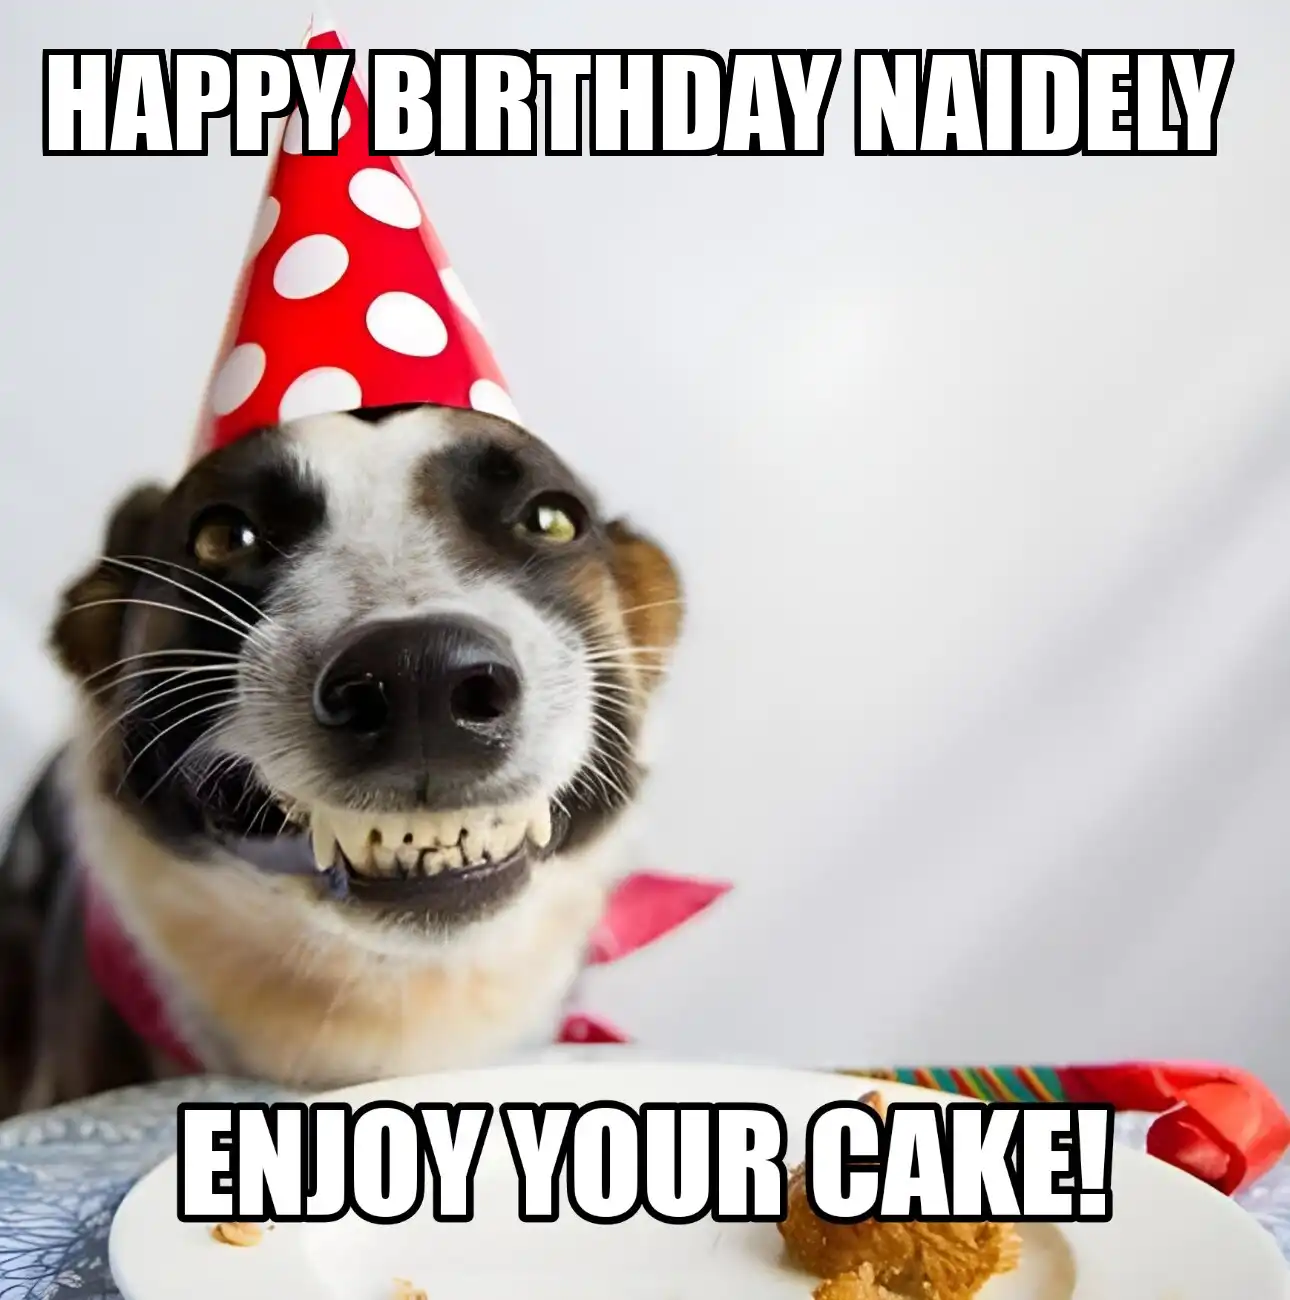 Happy Birthday Naidely Enjoy Your Cake Dog Meme